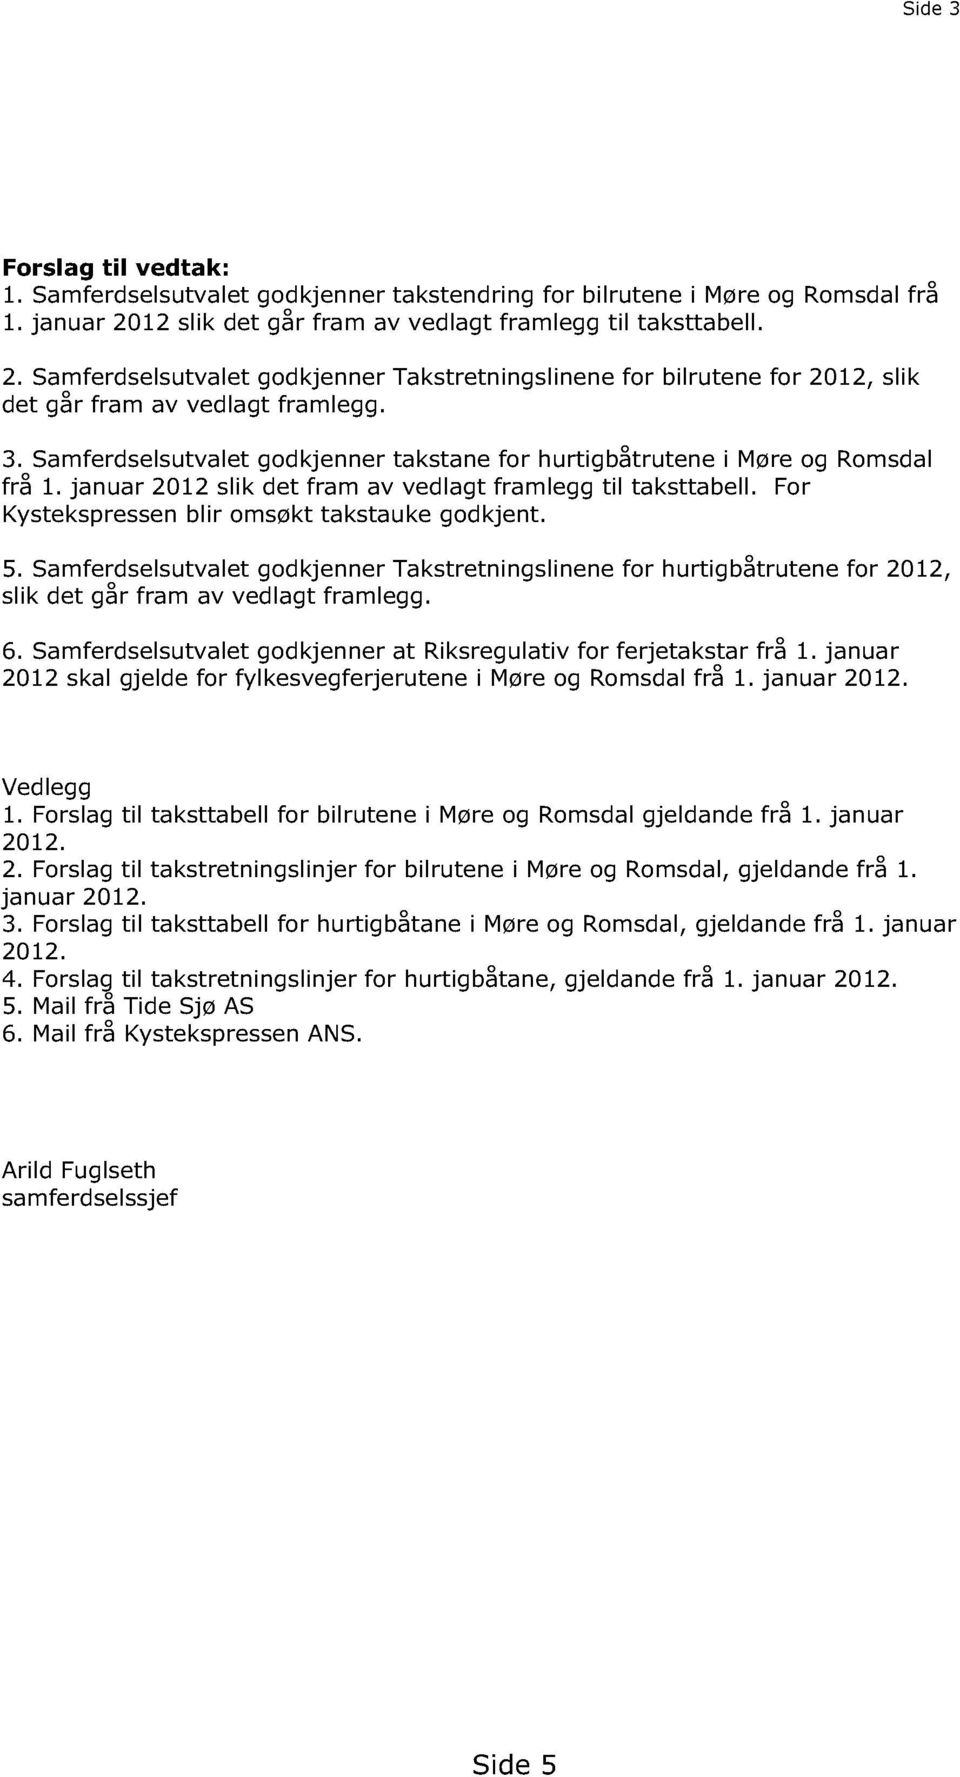 Samferdselsutvalet godkjenner takstane for hurtigbåtrutene i Møre og Romsdal frå 1. januar 2012 slik det fram av vedlagt framlegg til taksttabell. For Kystekspressen blir omsøkt takstauke godkjent. 5.